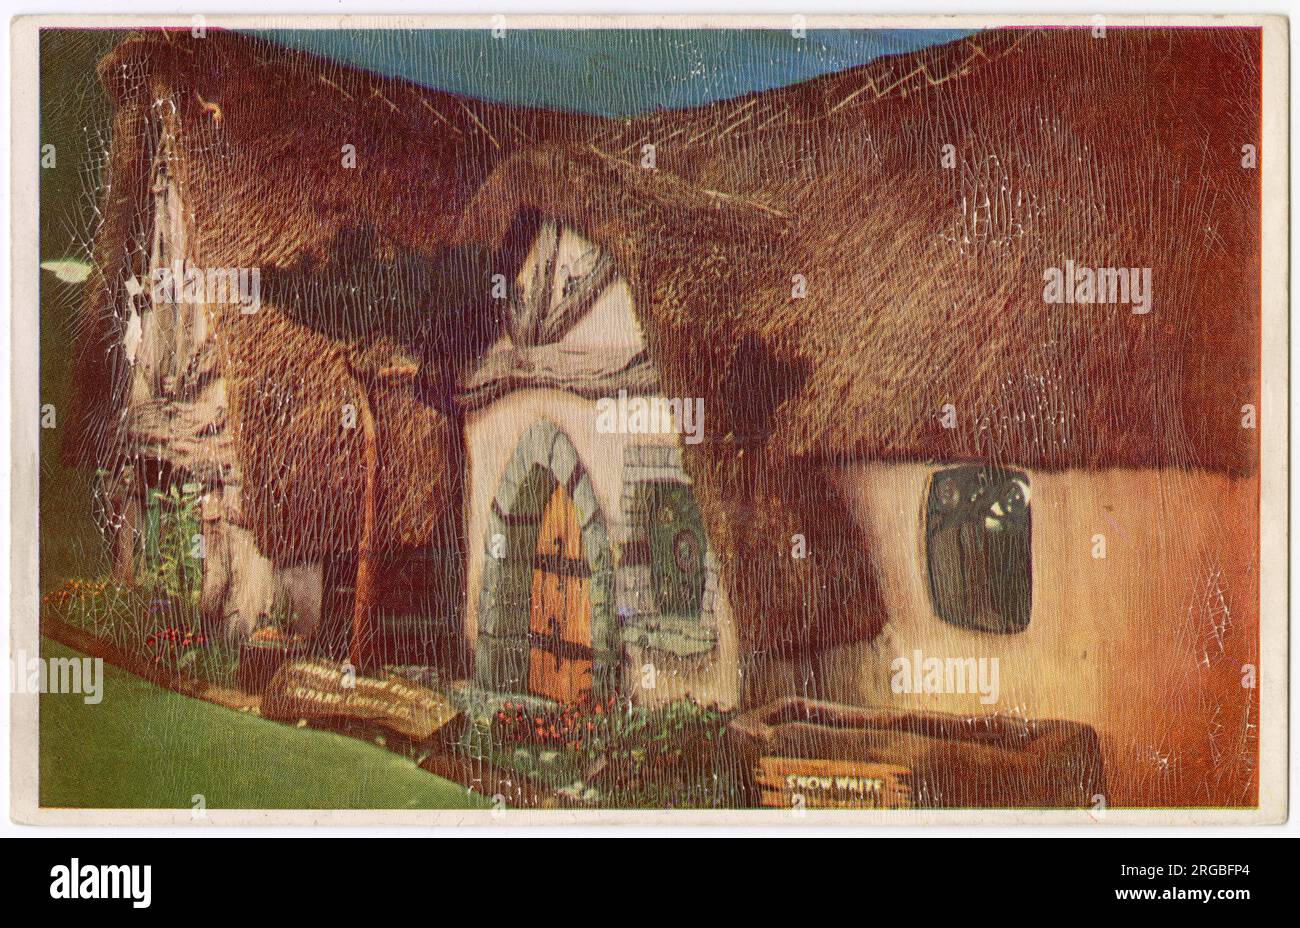 Daily Mail Ideal Home Exhibition, Olympia, Londres - Maison des sept nains de Richard Costain Ltd, du film Walt Disney de Blanche-neige. Banque D'Images